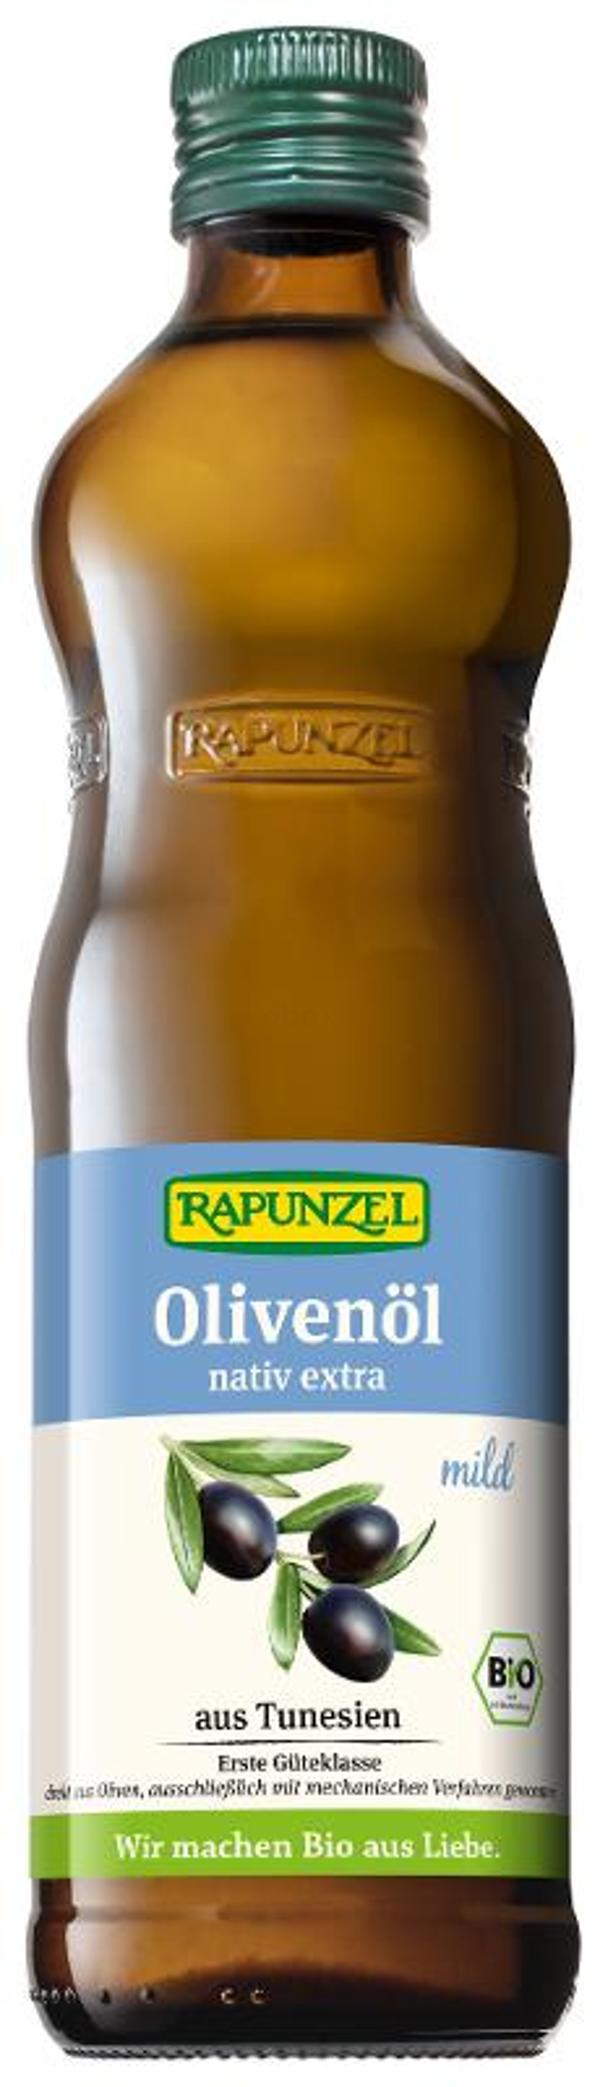 Produktfoto zu Olivenöl "nativ" extra mild 0,5l *RAP